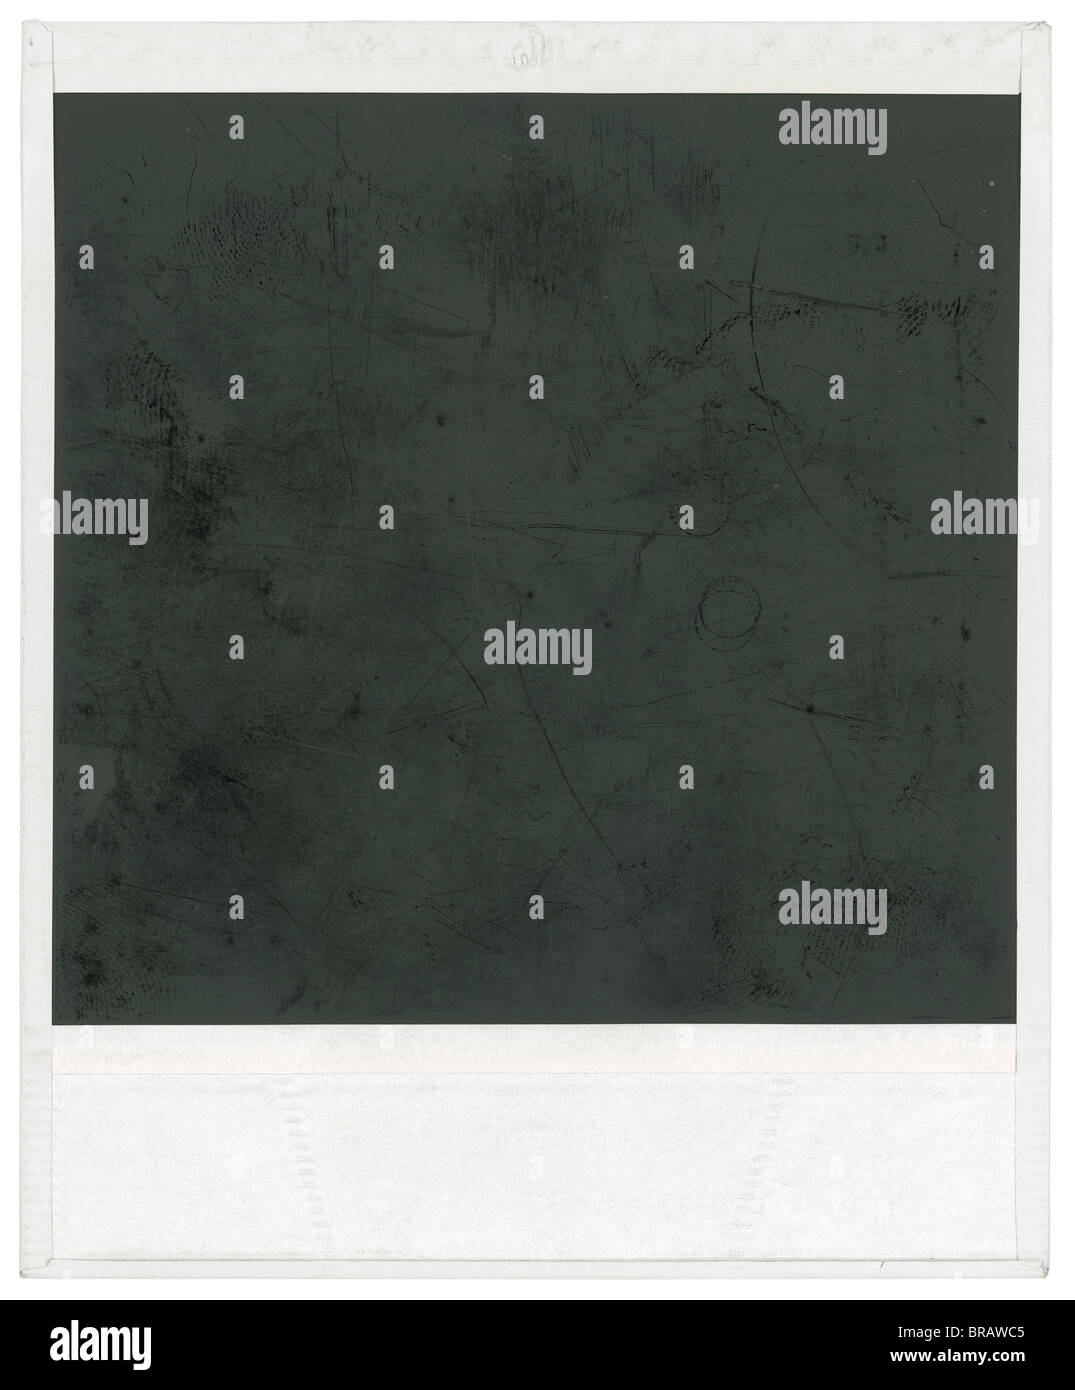 Großen Scan von Polaroid Rahmen isoliert von innen und außen mit  Beschneidungspfad Stockfotografie - Alamy